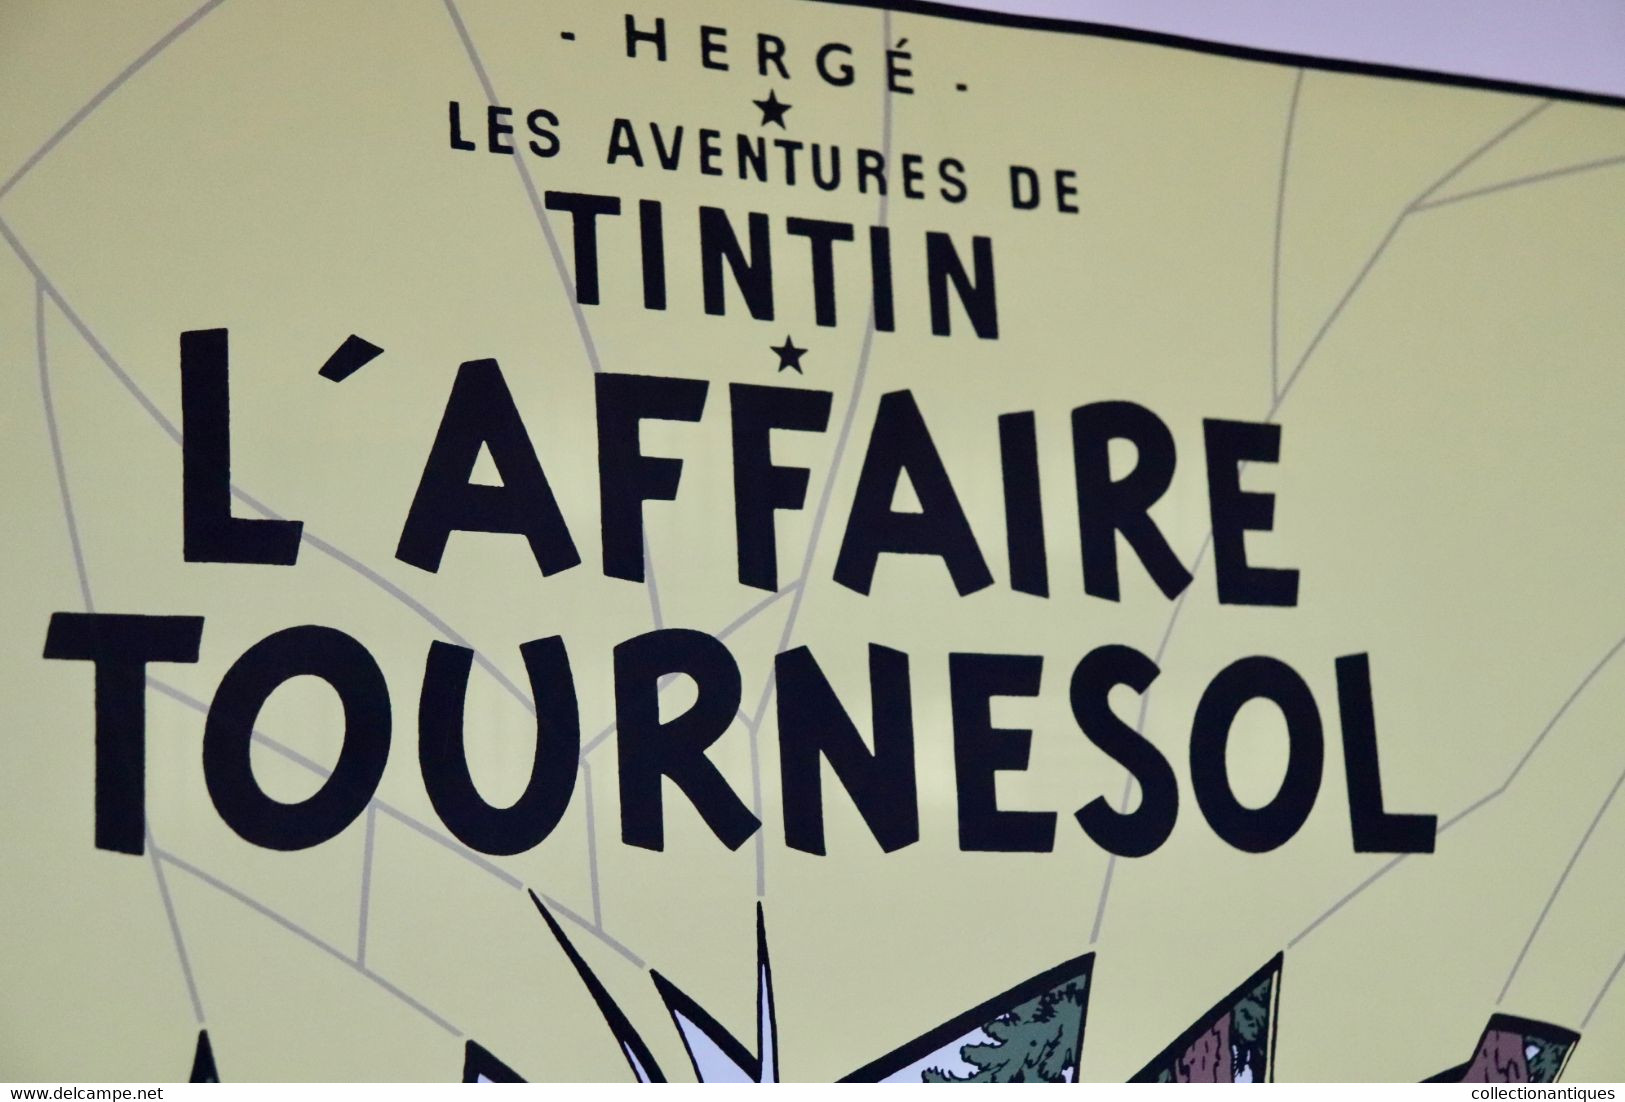 Sérigraphie Hergé Tintin - L'Affaire Tournesol (scène de la fuite) - Ed. limitée Escale Paris Casterman 1500 ex.- 1987